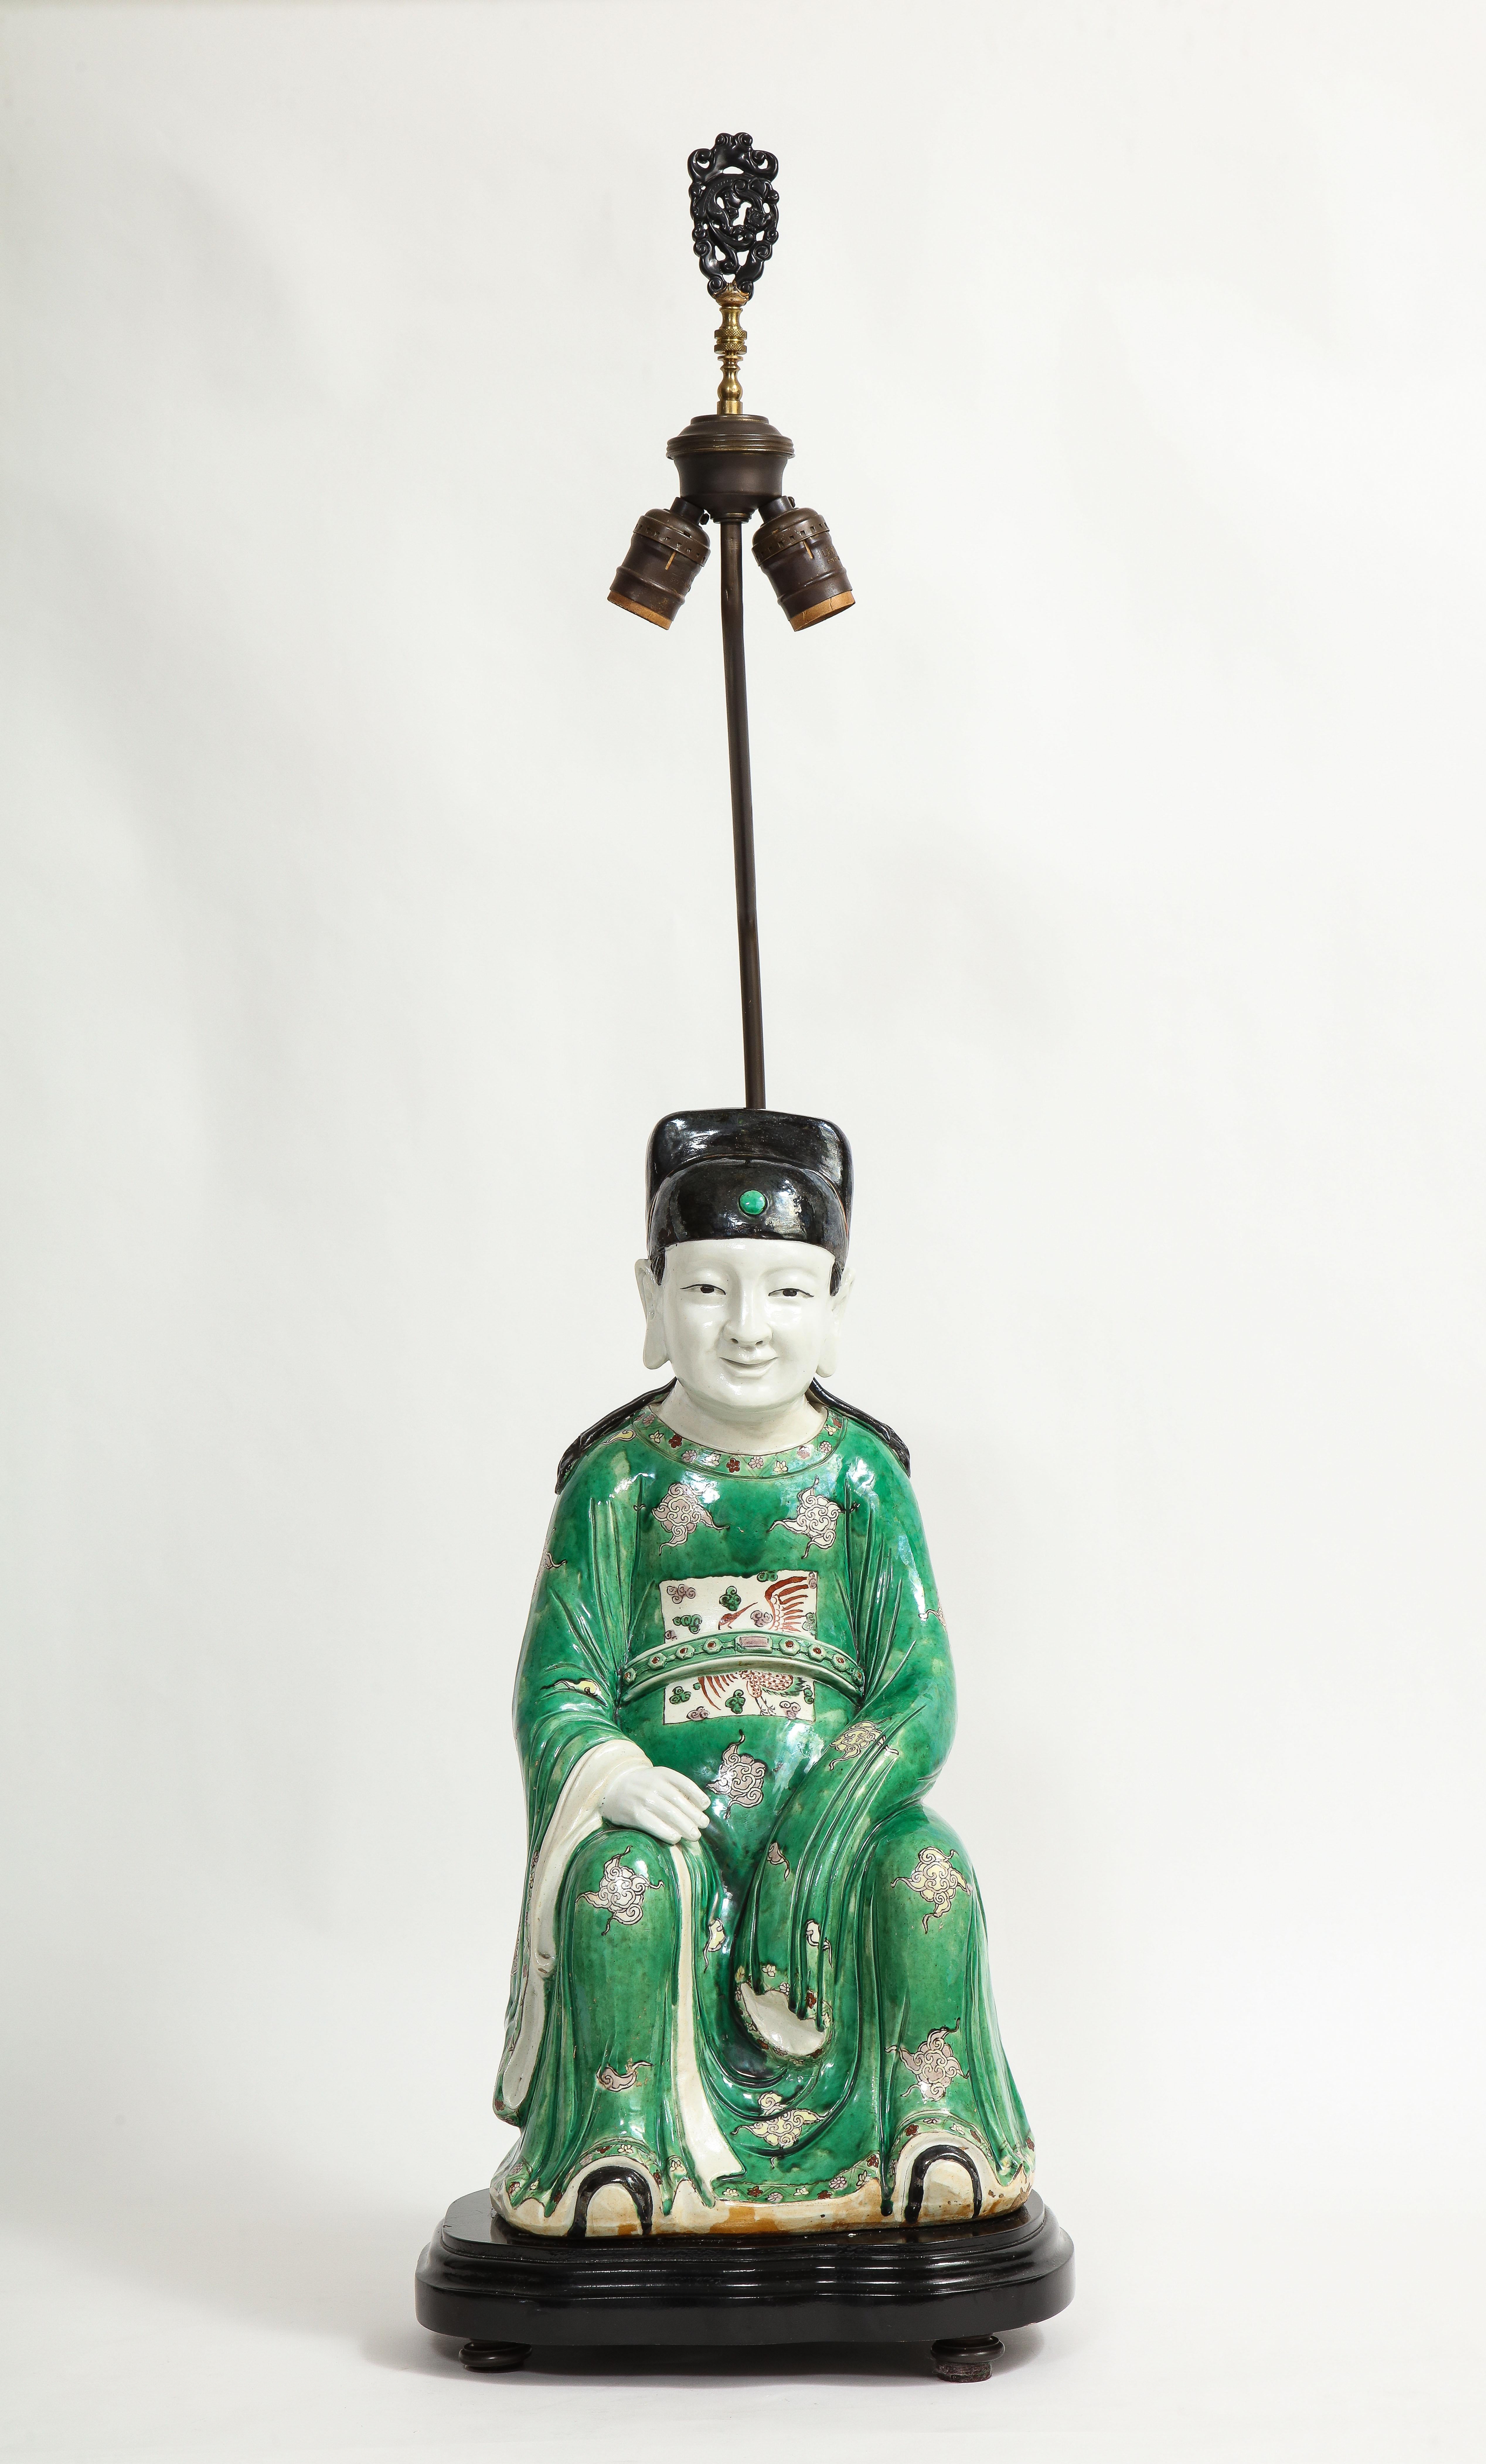 Une fabuleuse figure de lettré assis en porcelaine de la famille verte chinoise du 19e siècle, montée comme une lampe. Magnifiquement peinte à la main avec un éventail de couleurs monochromes comprenant le vert, le noir, le rouge, le jaune et le